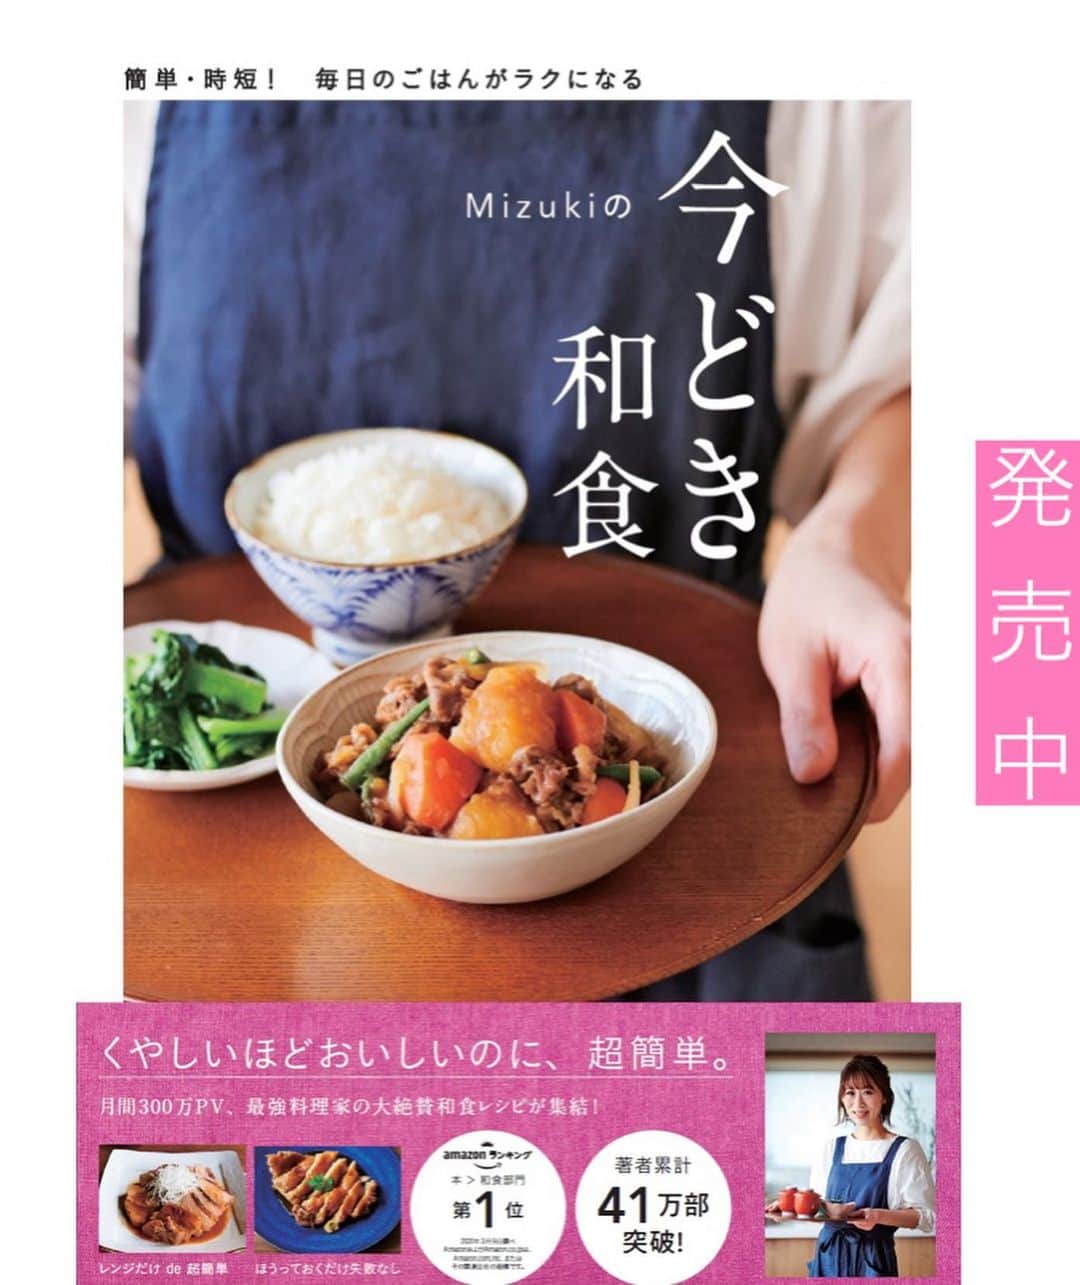 Mizuki【料理ブロガー・簡単レシピ】さんのインスタグラム写真 - (Mizuki【料理ブロガー・簡単レシピ】Instagram)「・﻿ 【#レシピ 】ーーーーーーーー﻿ ♡30分deフライパン煮豚♡﻿ ーーーーーーーーーーーーーー﻿ ﻿ ﻿ ﻿ おはようございます(*^^*)﻿ ﻿ 今日ご紹介させていただくのは﻿ 煮込み30分でできる﻿ \\ フライパン煮豚 //﻿ ﻿ タコ糸は要らないし﻿ 焼きもしない(*´艸`)﻿ 【10分+10分+10分=30分】﻿ ただただ煮るだけ！の﻿ 超簡単レシピです♡﻿ ﻿ お正月料理にもぴったりなので﻿ よかったらお試し下さいね(*^^*)﻿ 染みたたまごも美味しいですよ〜♩﻿ ﻿ ﻿ ﻿ ＿＿＿＿＿＿＿＿＿＿＿＿＿＿＿＿＿＿＿＿﻿ 【4人分】﻿ 豚肩ロースかたまり肉...400〜500g﻿ ゆで卵...4個﻿ 生姜...1かけ﻿ ●水...200ml﻿ ●醤油...100ml﻿ ●みりん...50ml﻿ ●砂糖・酒...各大2﻿ (好みで)白髪ねぎ...適量﻿ ﻿ 1.豚肉は長さを半分に切り、全体をフォークで刺す。生姜は薄切りにする。﻿ 2.フライパンに●を入れて強火にかける。煮立ったら1を入れて蓋をし、弱めの中火で10分煮る。裏返してゆで卵を加え、また蓋をして更に10分煮る。最後は蓋を外し、時々返しながら10分煮る。﻿ 3.2を食べやすい大きさに切り、器に盛って煮汁をかける。仕上げに白髪ねぎをトッピングする。﻿ ￣￣￣￣￣￣￣￣￣￣￣￣￣￣￣￣￣￣￣￣﻿ ﻿ ﻿ ﻿ 《ポイント》﻿ ♦︎煮汁につけたまま一度冷ますとより味が染みます♩﻿ (時間がない時はスライスしてから煮汁に少しつけるのも◎)﻿ ♦︎私は24cmのフライパンを使用しています♩﻿ ♦︎冷蔵庫で4日は保存できます♩﻿ ♦︎豚肉のみ冷凍もOK！スライスしてから煮汁と一緒に保存袋に入れ、空気を抜いて冷凍して下さい♩﻿ ﻿ ﻿ ﻿ ﻿ ﻿ ﻿ ﻿ ﻿ 📕新刊発売中📕﻿ 【ラクしておいしい！#1品晩ごはん 】﻿ ￣￣￣￣￣￣￣￣￣￣￣￣￣￣￣￣￣﻿ 私たちだってヘトヘトな日がある•••﻿ 毎日何品も作っていられない•••﻿ もうごはんに悩みたくない😢﻿ そんな時、1品ごはんはいかがでしょう？﻿ というご提案です✨﻿ ﻿ 【1品ごはん】は﻿ 副菜いらずで全てがシンプル！﻿ ￣￣￣￣￣￣￣￣￣￣￣￣￣￣￣￣￣￣﻿ 一品つくるだけでいいから﻿ 献立を考えなくてよし！﻿ ￣￣￣￣￣￣￣￣￣￣￣￣￣￣￣￣￣￣﻿ 悩まない、疲れない、﻿ 気力や時間がなくてもなんとかなる！﻿ ￣￣￣￣￣￣￣￣￣￣￣￣￣￣￣￣￣￣﻿ そんな頼りになる﻿ 便利なお助けごはんです☺️💕﻿ (ハイライトに🔗貼っています✨)﻿ ￣￣￣￣￣￣￣￣￣￣￣￣￣￣￣￣￣﻿ ﻿ ﻿ ﻿ ﻿ ﻿ ⭐️発売中⭐️﻿ ＿＿＿＿＿＿＿＿＿＿＿＿＿＿＿＿＿＿﻿ しんどくない献立、考えました♩﻿ \15分でいただきます/﻿ 📕#Mizukiの2品献立 📕﻿ ﻿ 和食をもっとカジュアルに♩﻿ \毎日のごはんがラクになる/﻿ 📘#Mizukiの今どき和食 📘﻿ ﻿ ホケミレシピの決定版♩﻿ \はじめてでも失敗しない/﻿ 📙ホットケーキミックスのお菓子 📙﻿ ﻿ NHKまる得マガジンテキスト☆﻿ ホットケーキミックスで﻿ 📗絶品おやつ&意外なランチ📗﻿ ￣￣￣￣￣￣￣￣￣￣￣￣￣￣￣￣￣￣﻿ ﻿ ﻿ ﻿ ＿＿＿＿＿＿＿＿＿＿＿＿＿＿＿＿＿＿﻿ レシピを作って下さった際や﻿ レシピ本についてのご投稿には﻿ タグ付け( @mizuki_31cafe )して﻿ お知らせいただけると嬉しいです😊💕﻿ ￣￣￣￣￣￣￣￣￣￣￣￣￣￣￣￣￣￣﻿ ﻿ ﻿ ﻿ ﻿ #煮豚#フライパン#作り置き#お正月料理#おせち料理#Mizuki#簡単レシピ#時短レシピ#節約レシピ#料理#フーディーテーブル#マカロニメイト#おうちごはん#デリスタグラマー#料理好きな人と繋がりたい#食べ物#おうちごはんlover#写真好きな人と繋がりたい#foodpic#cooking#recipe#lin_stagrammer#foodporn#yummy#f52grams#煮豚m」12月25日 7時02分 - mizuki_31cafe